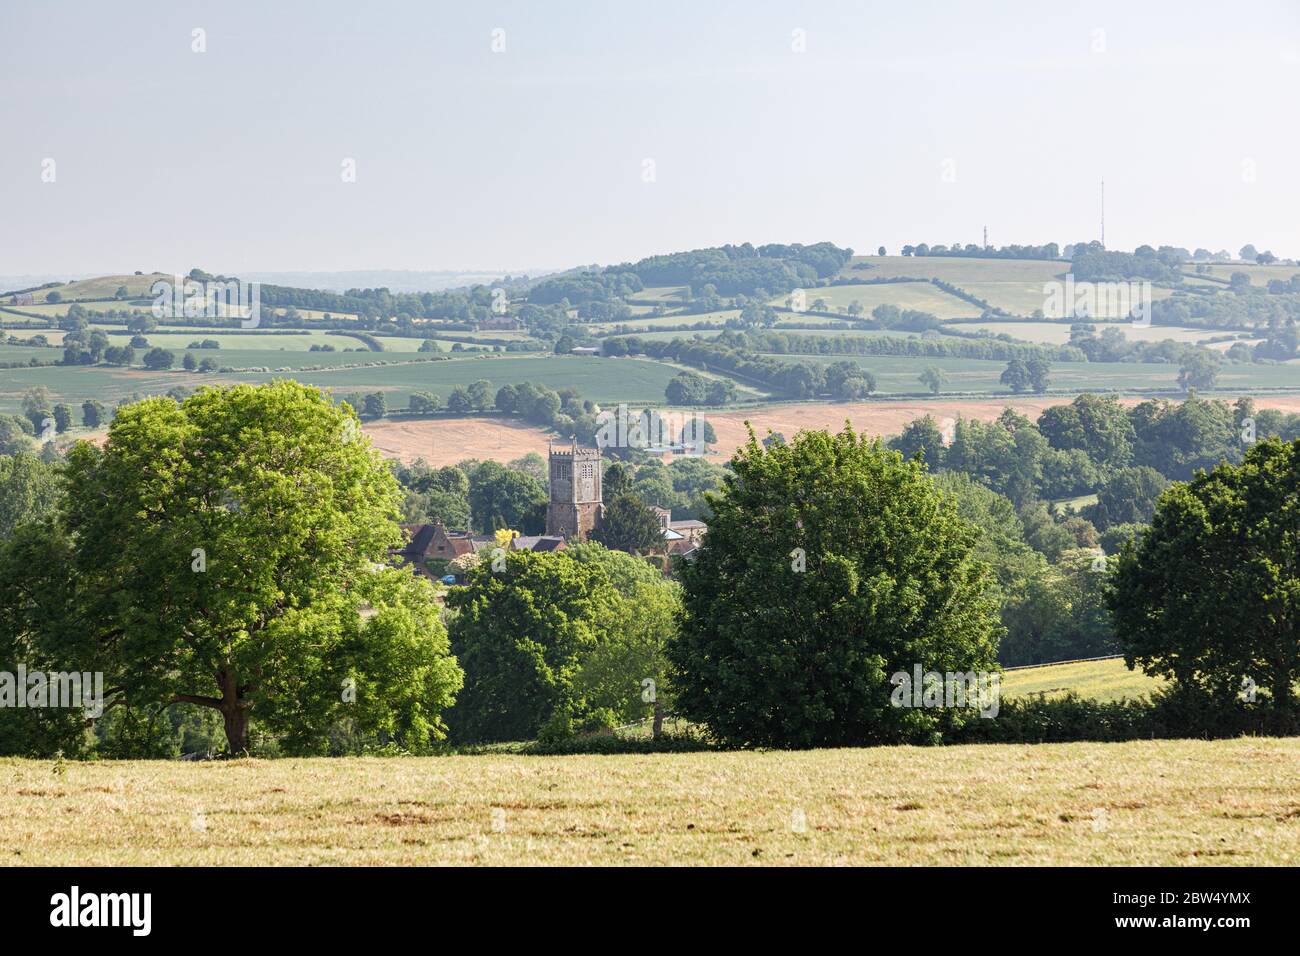 Badby, Northamptonshire, UK - 28. Mai 2020: Der Kirchturm im Dorf Badby ist von Bäumen umgeben, hinter denen sich die Landschaft sanft abrollt. Stockfoto